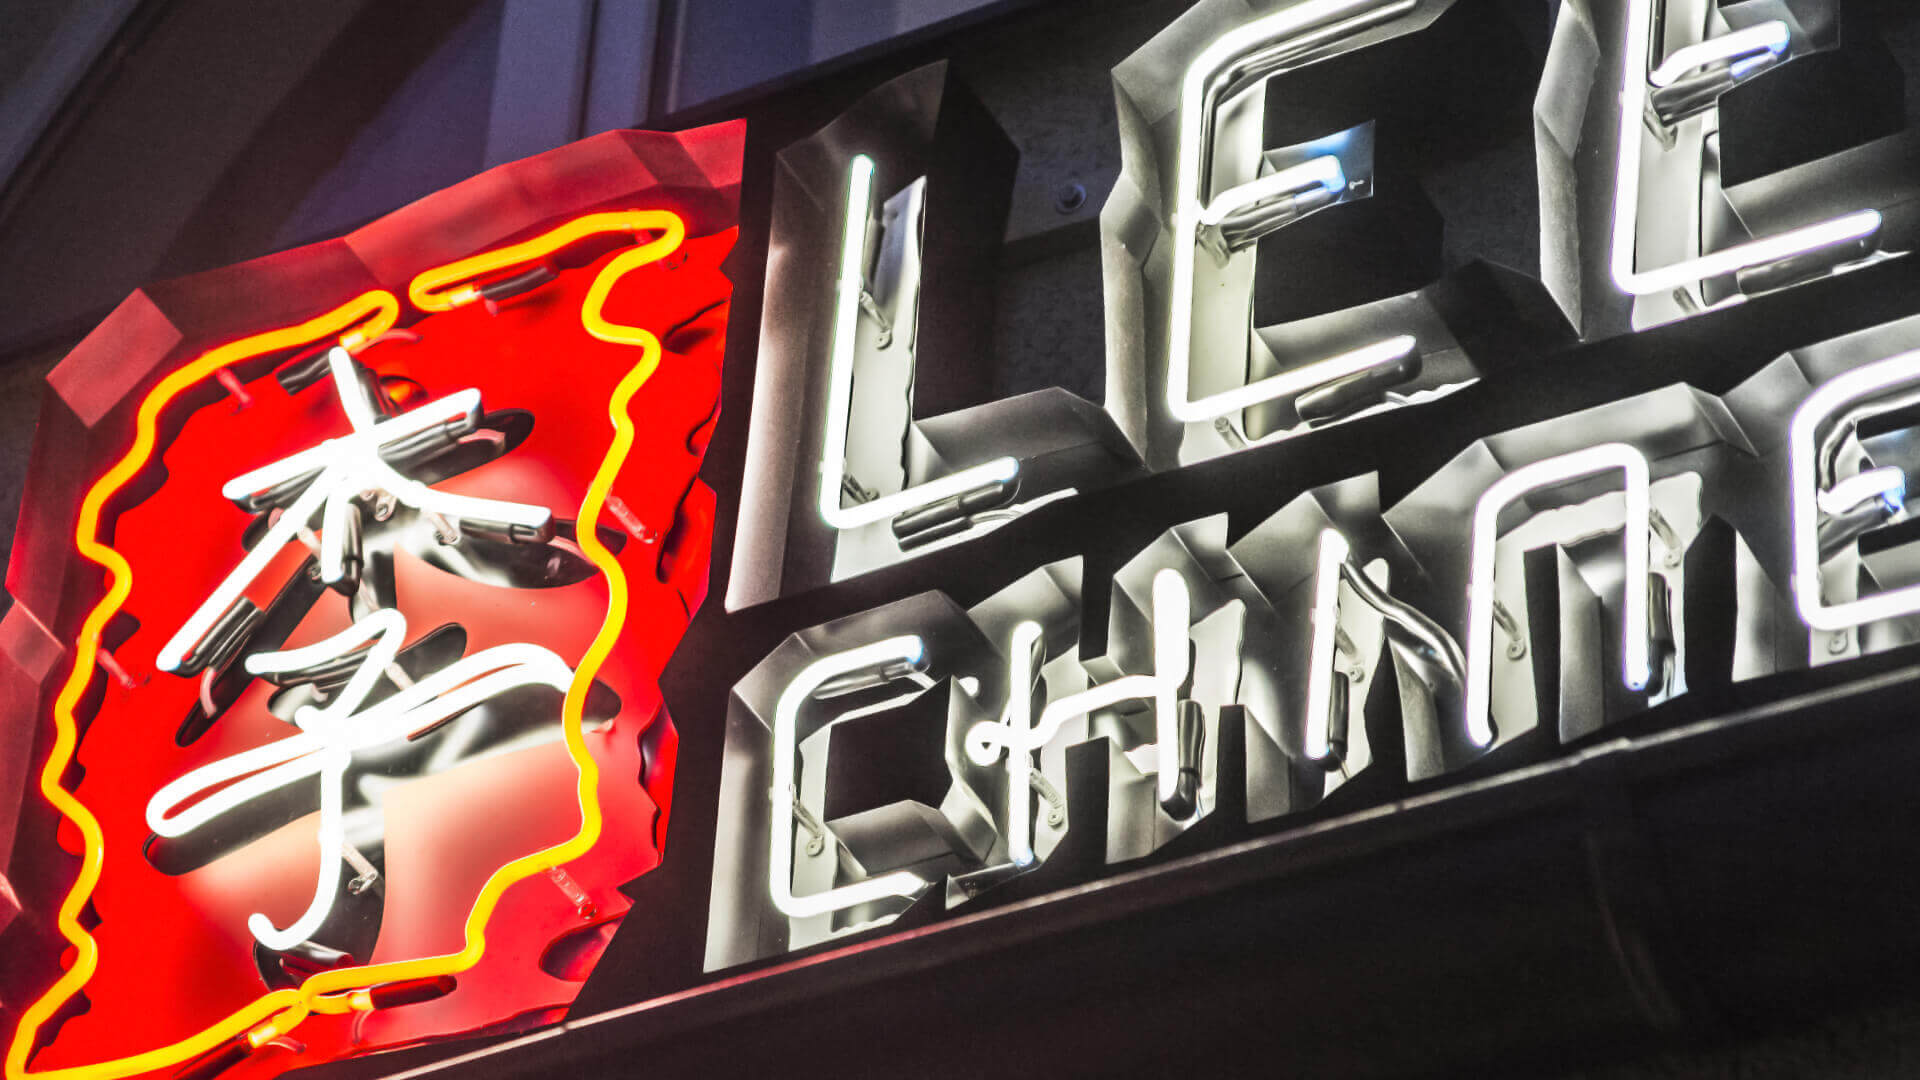 Lees Chinesisch - neon-lees-chinese-neon-über-dem-eingang-zum-restaurant-neon-an-der-wand-neon-an-der-außenseite-neon-im-melierten-rostenden-logo-schild-chinese-buchstaben-schilder-neon-lites-beleuchtet-china-restuarant-gdansk